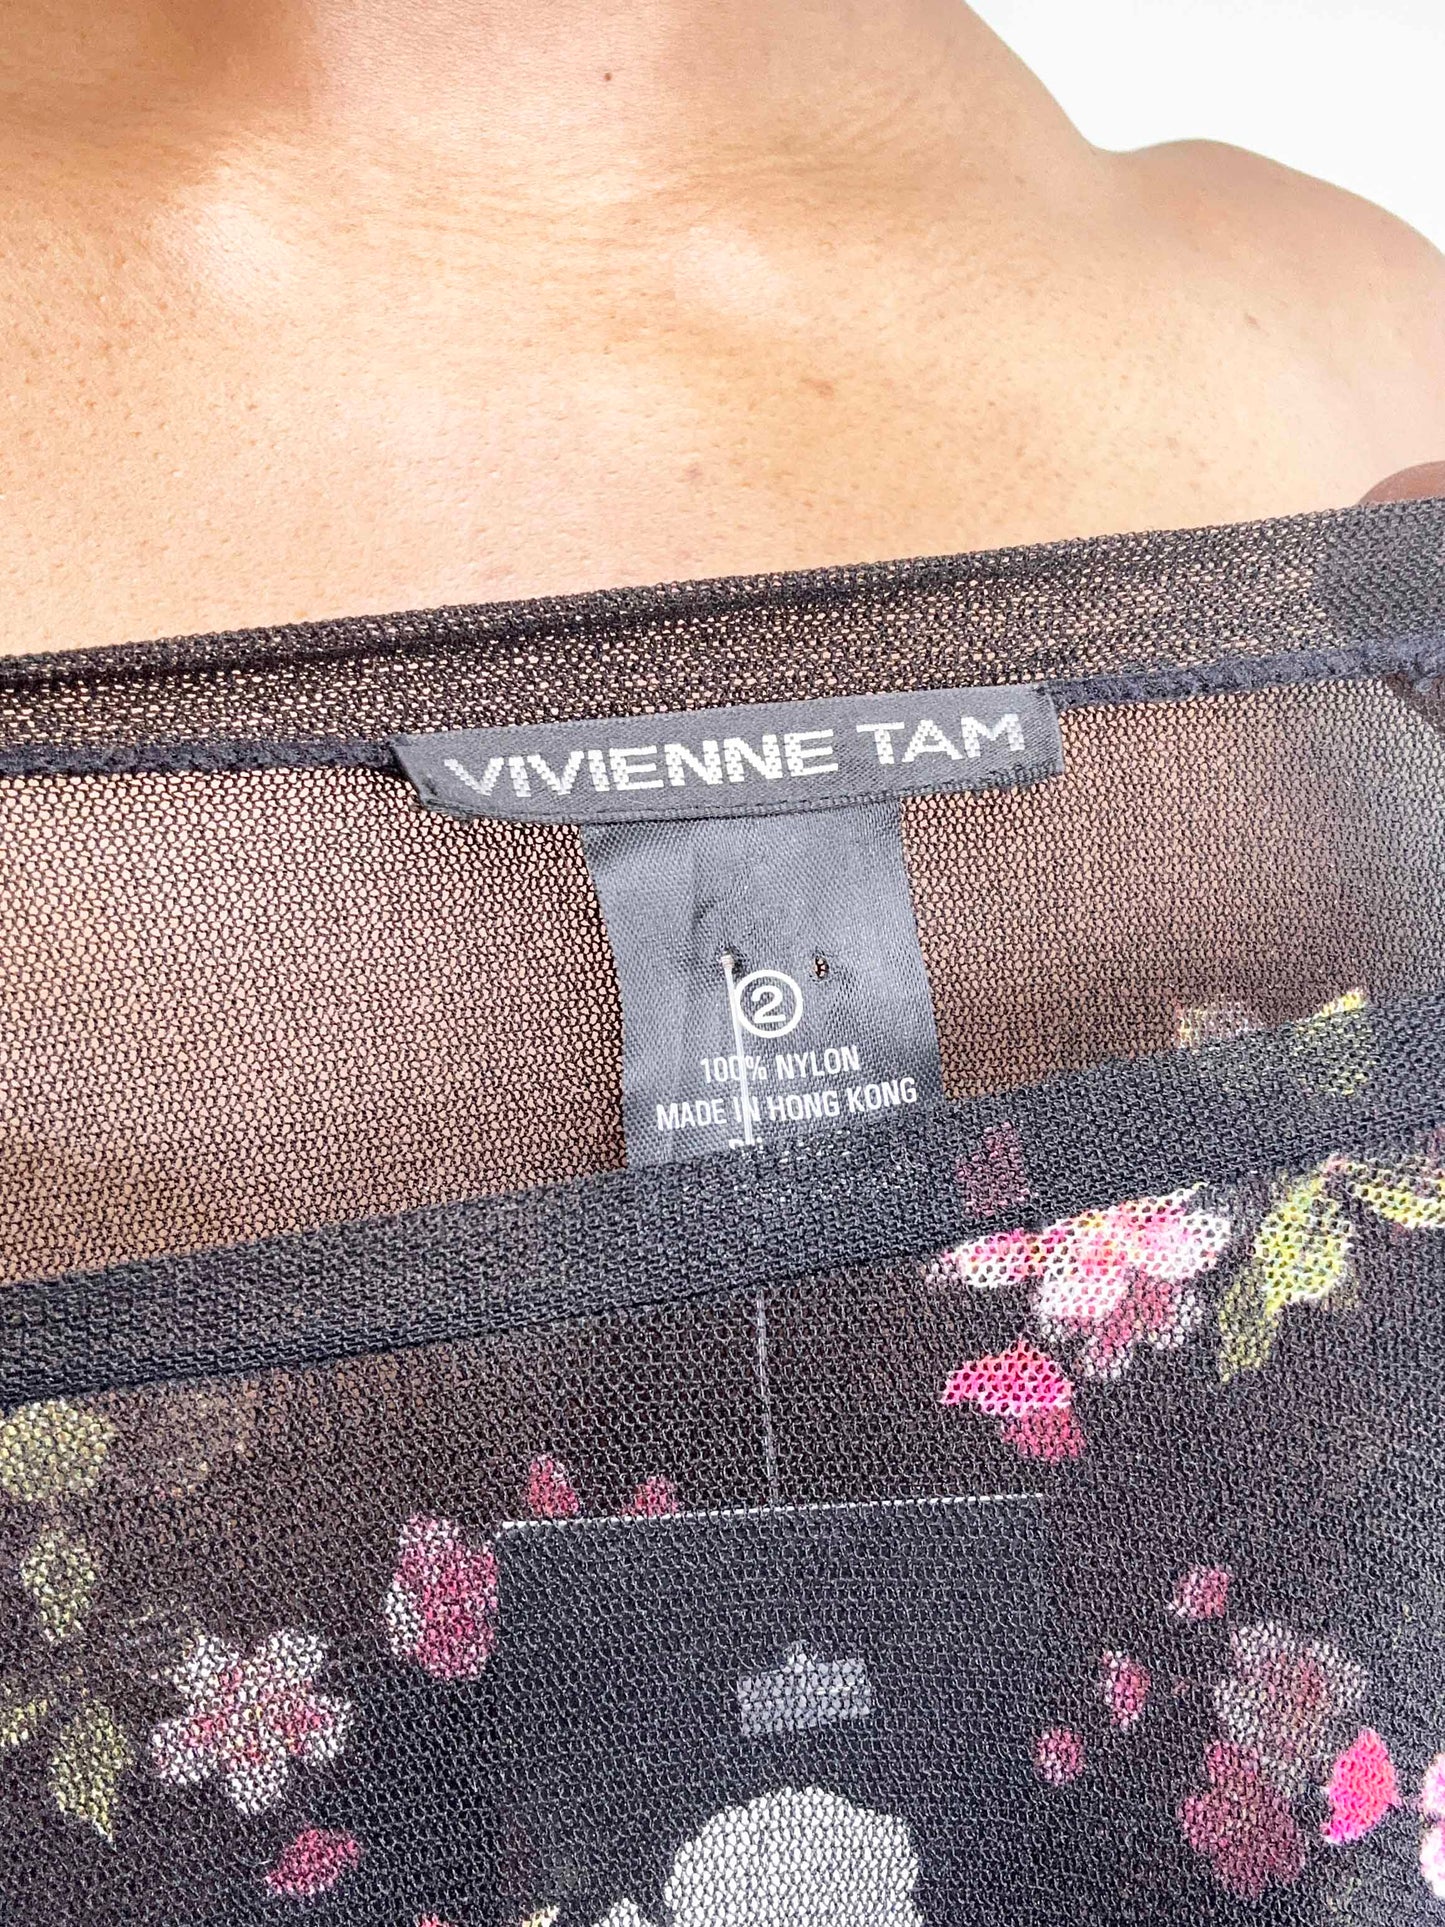 Vivienne Tam Sheer Oriental Top (1990's)